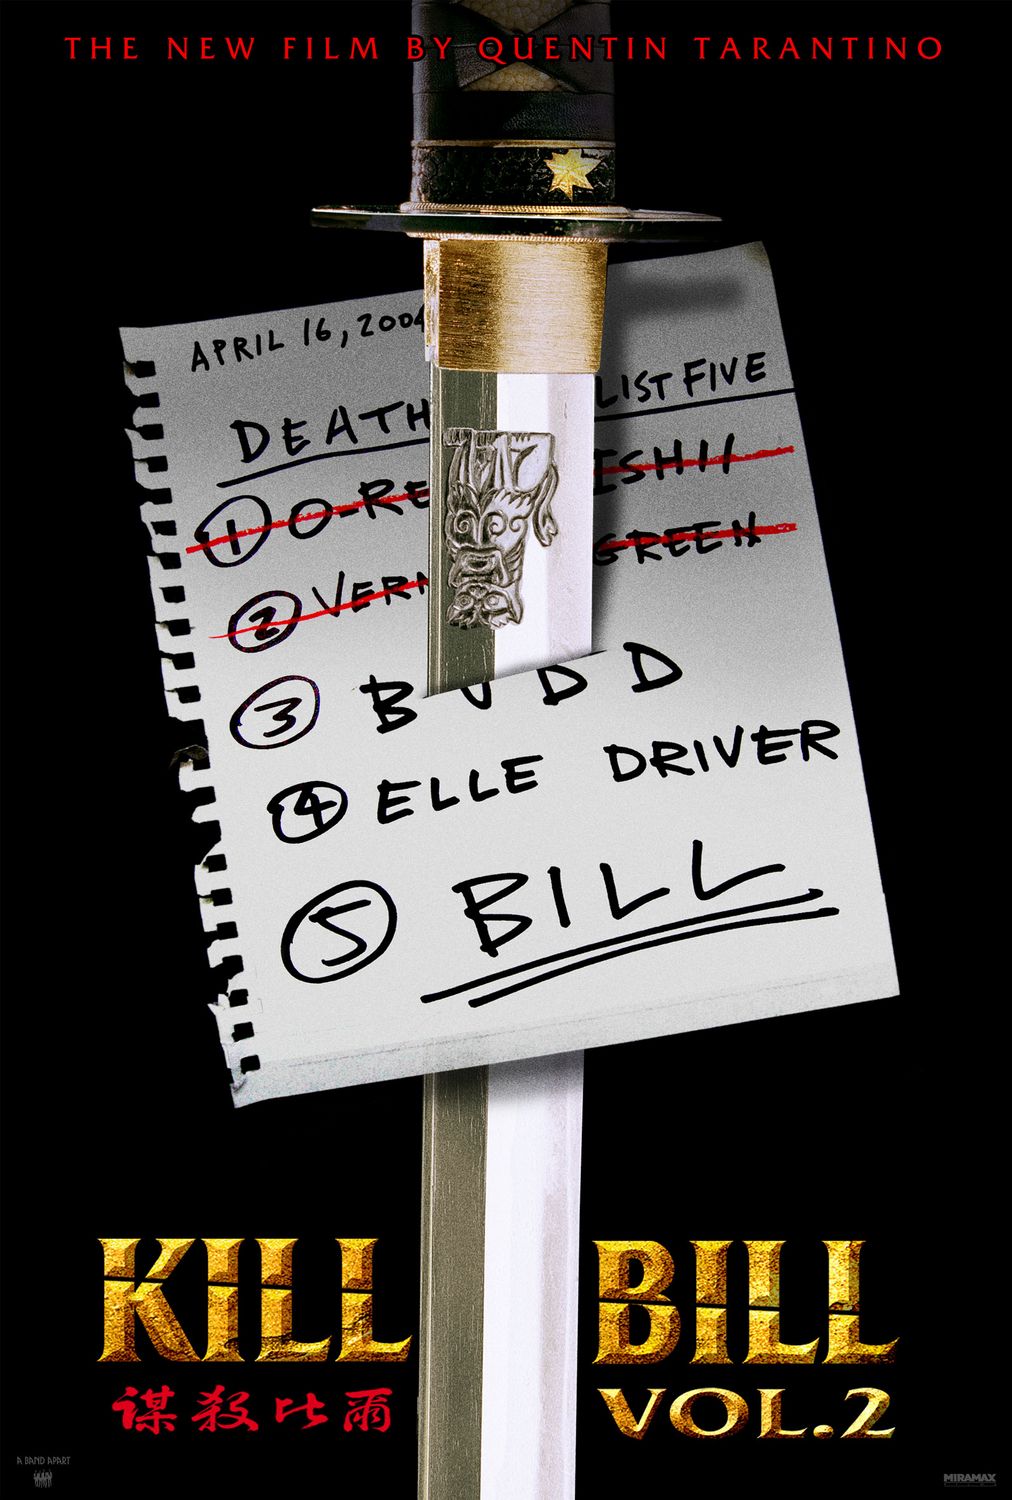 Постер - Убить Билла 2: 1012x1500 / 212 Кб